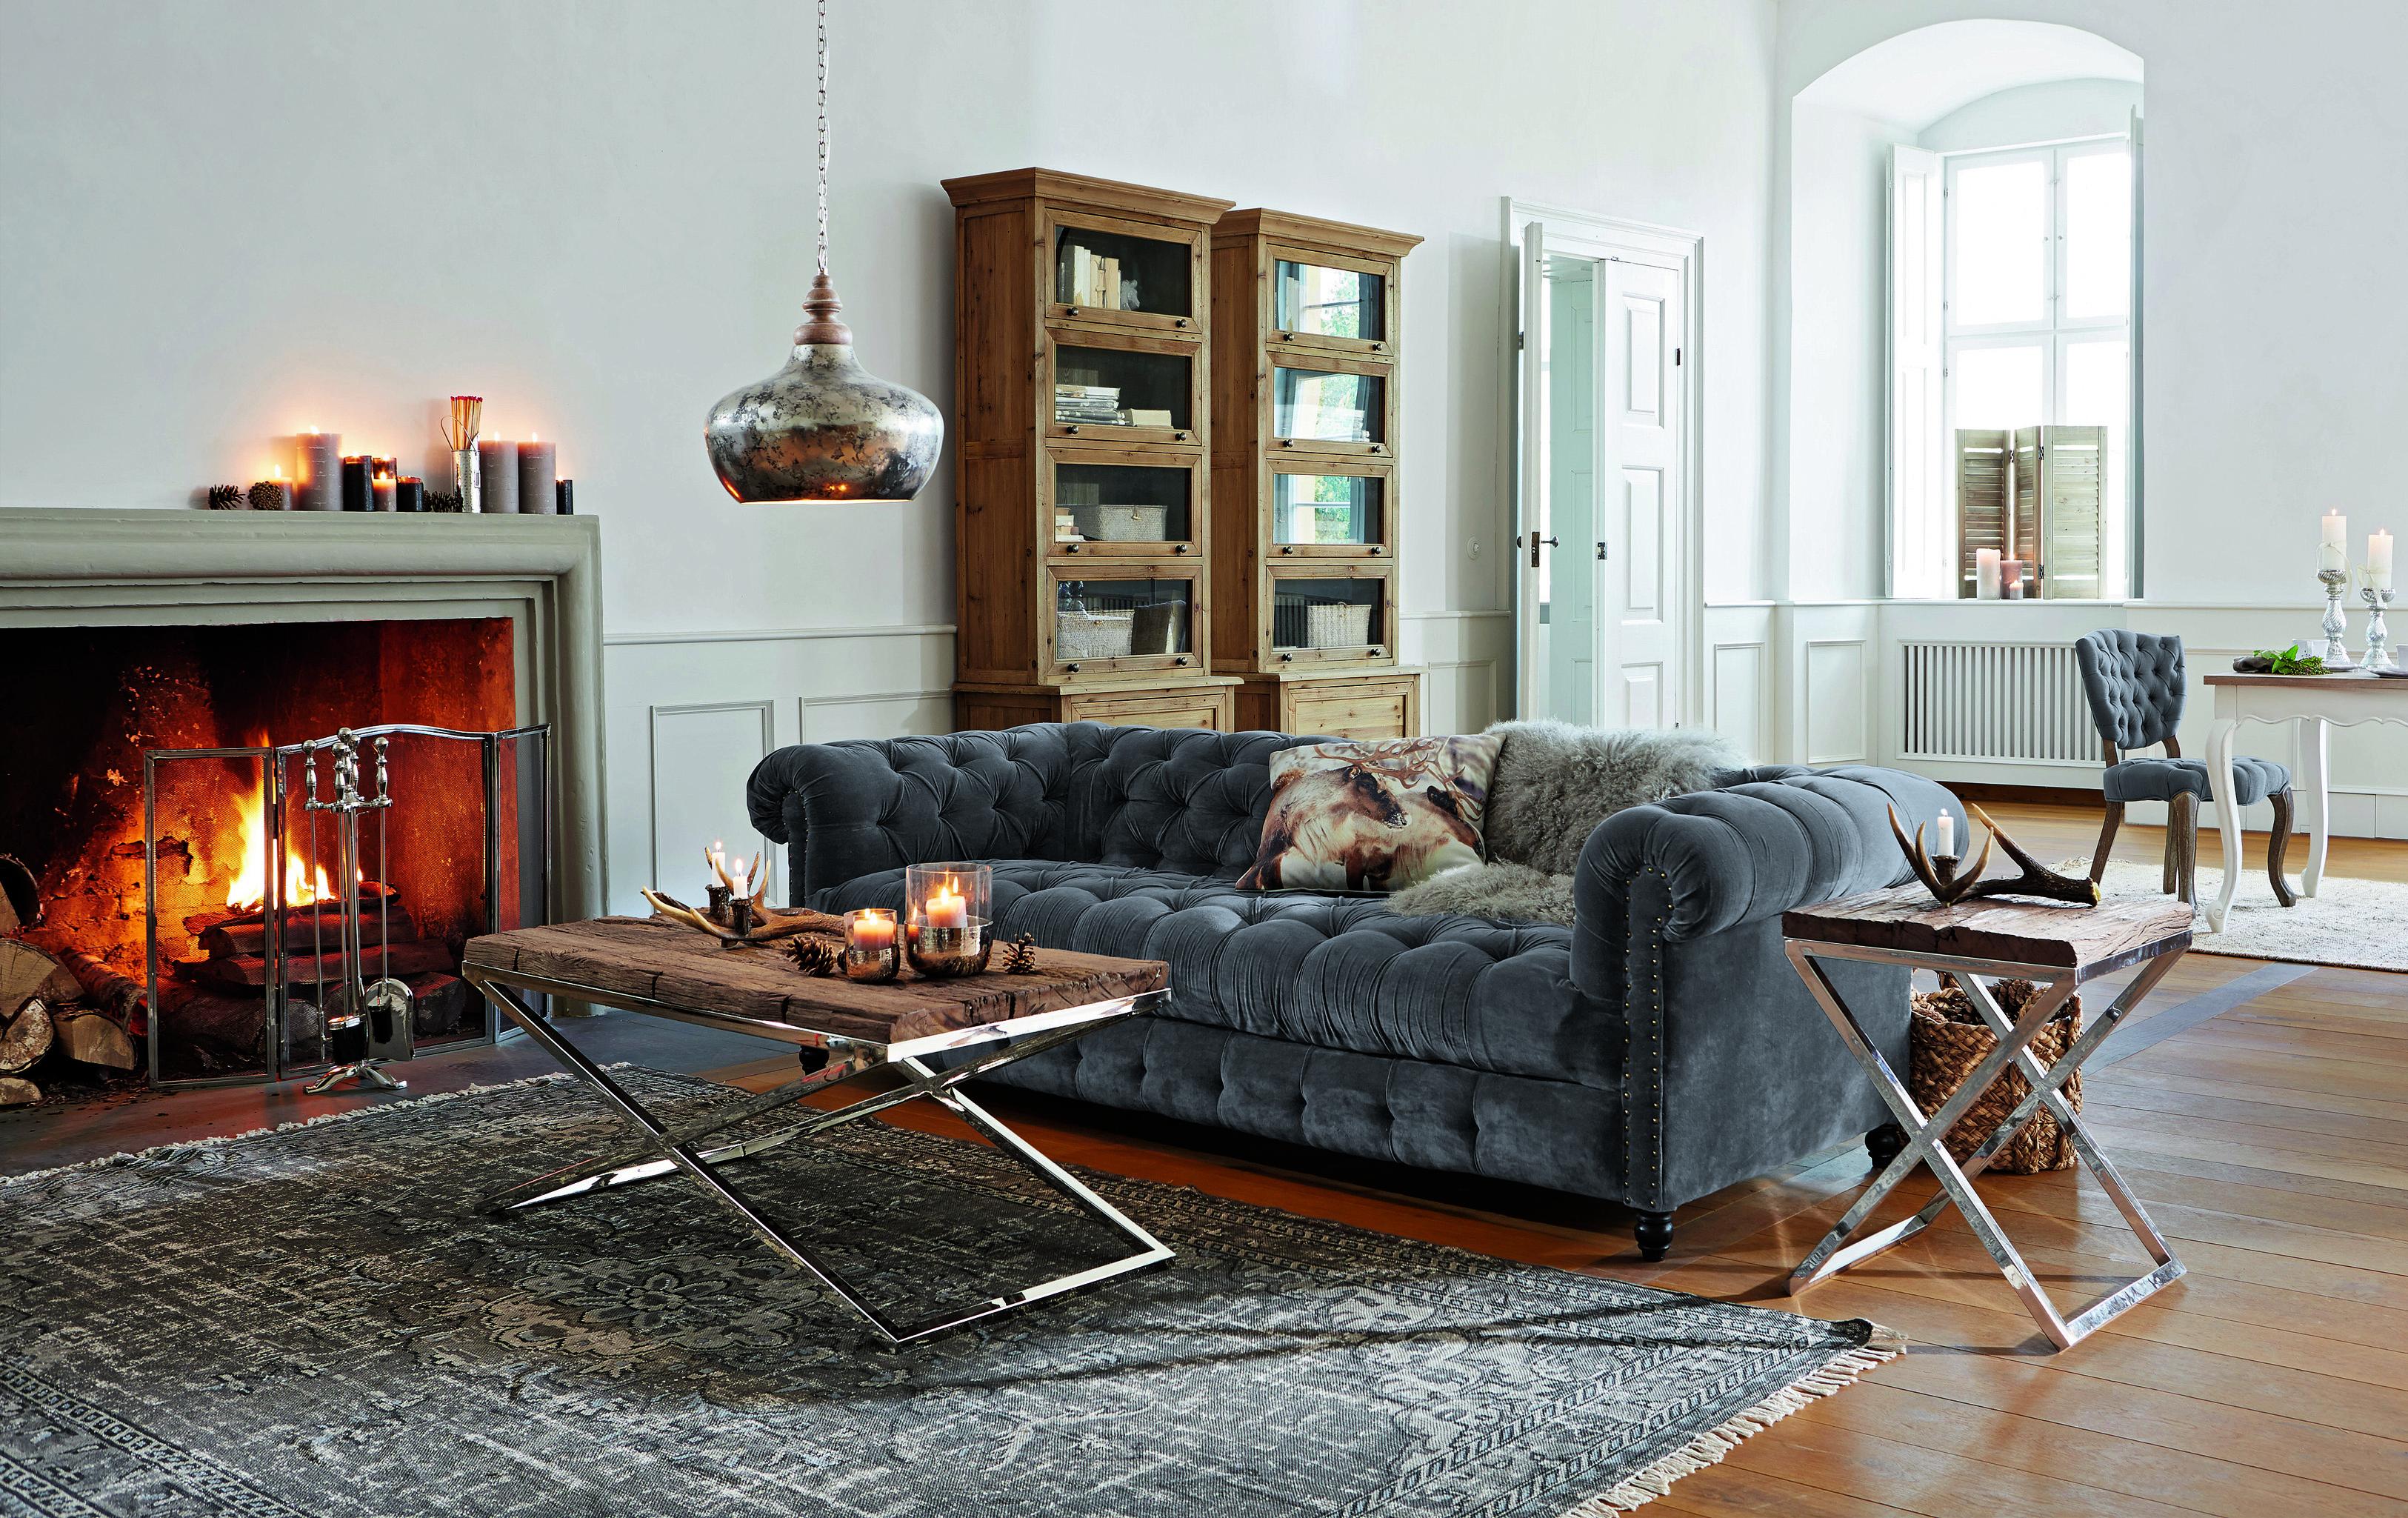 Gemütliche Kaminstunden #couchtisch #regal #teppich #kamin #wohnzimmer #sofa #lampe ©LOBERON